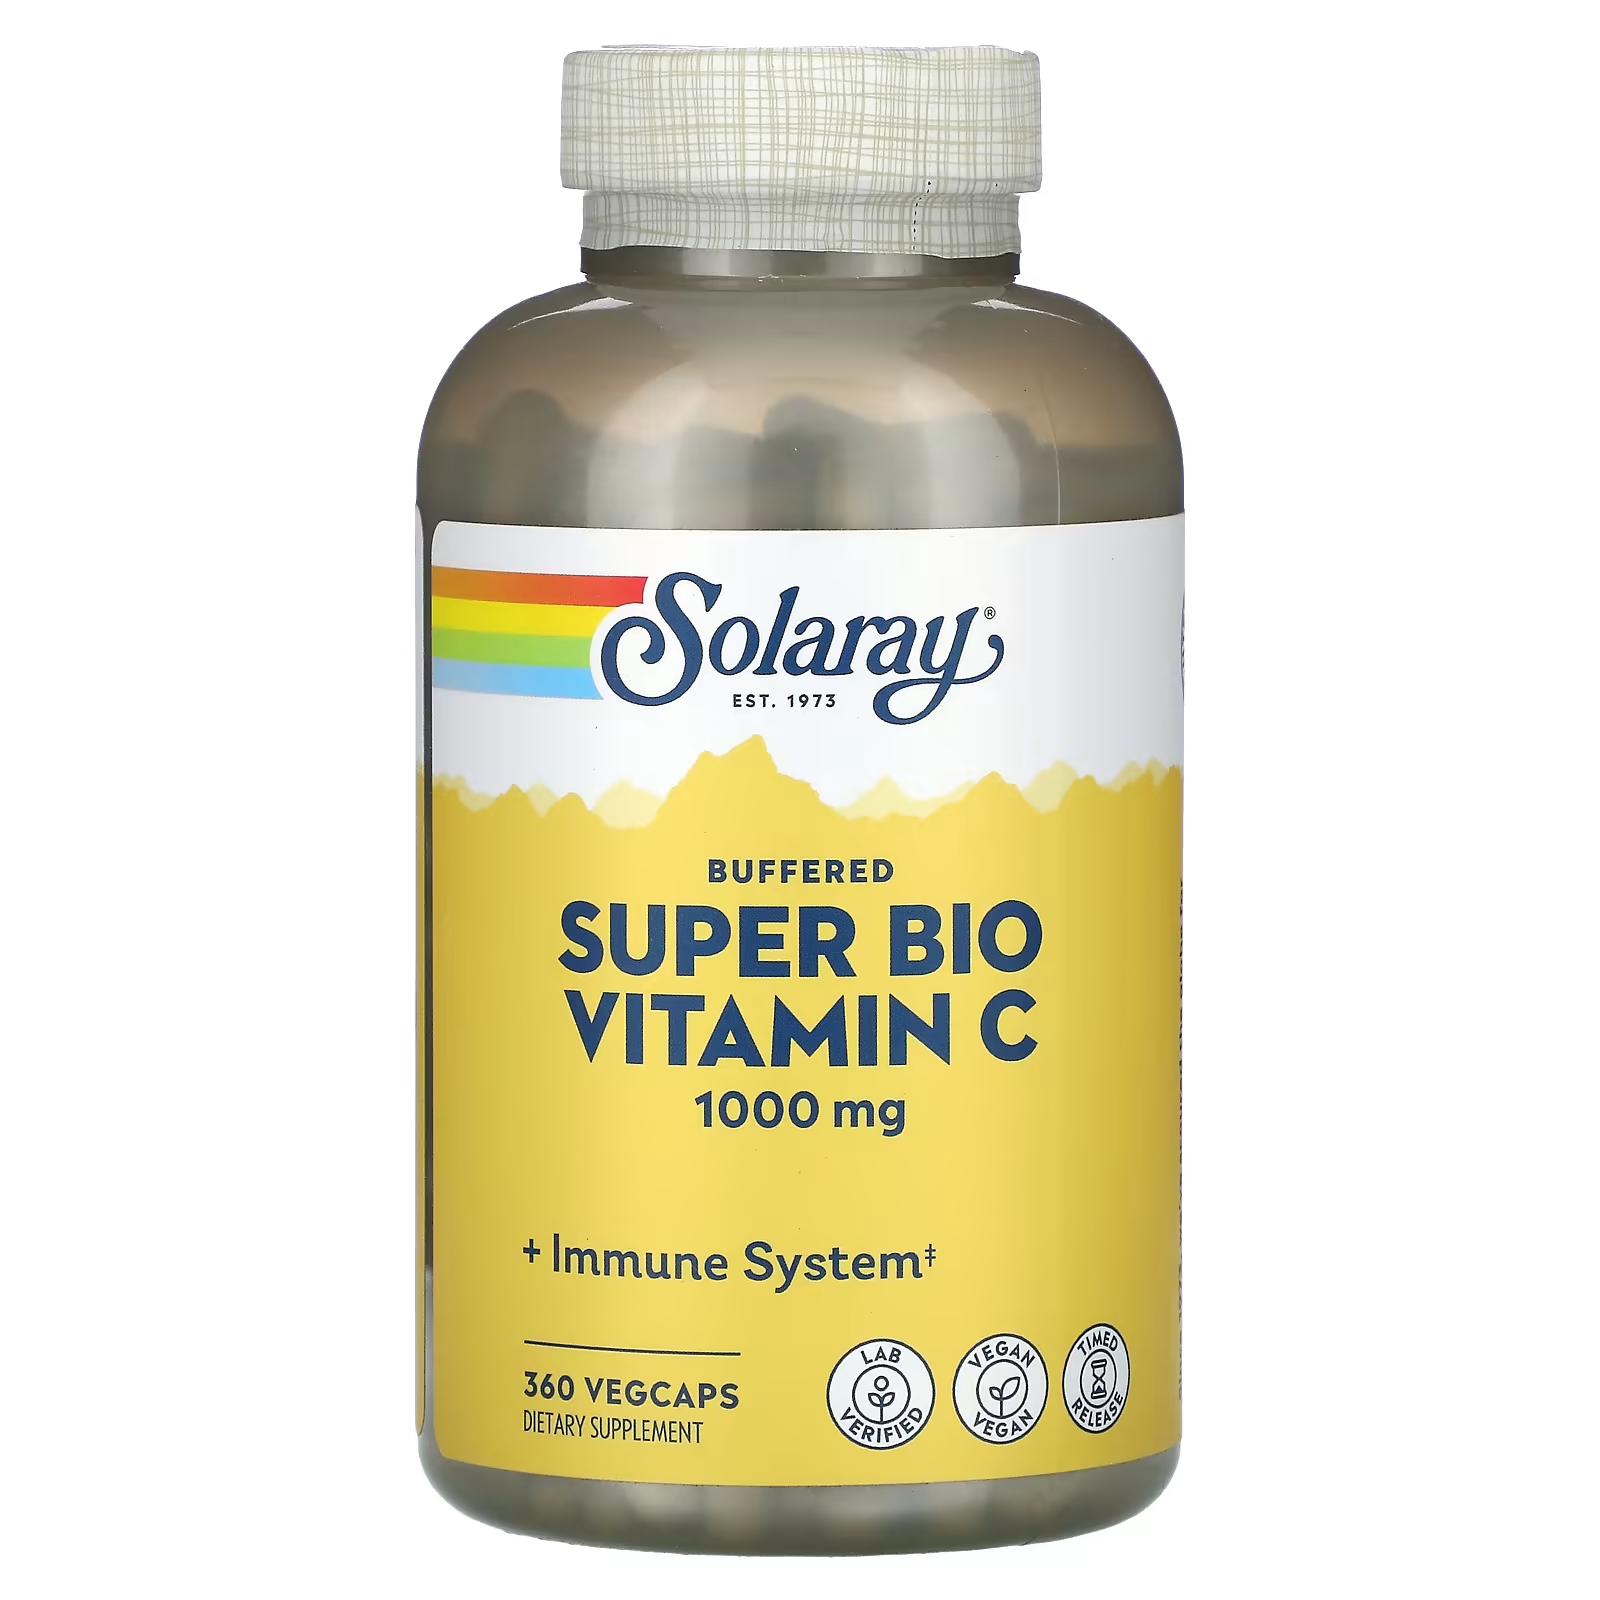 Буферизованный супербио витамин С Solaray для иммунитета, 360 капсул